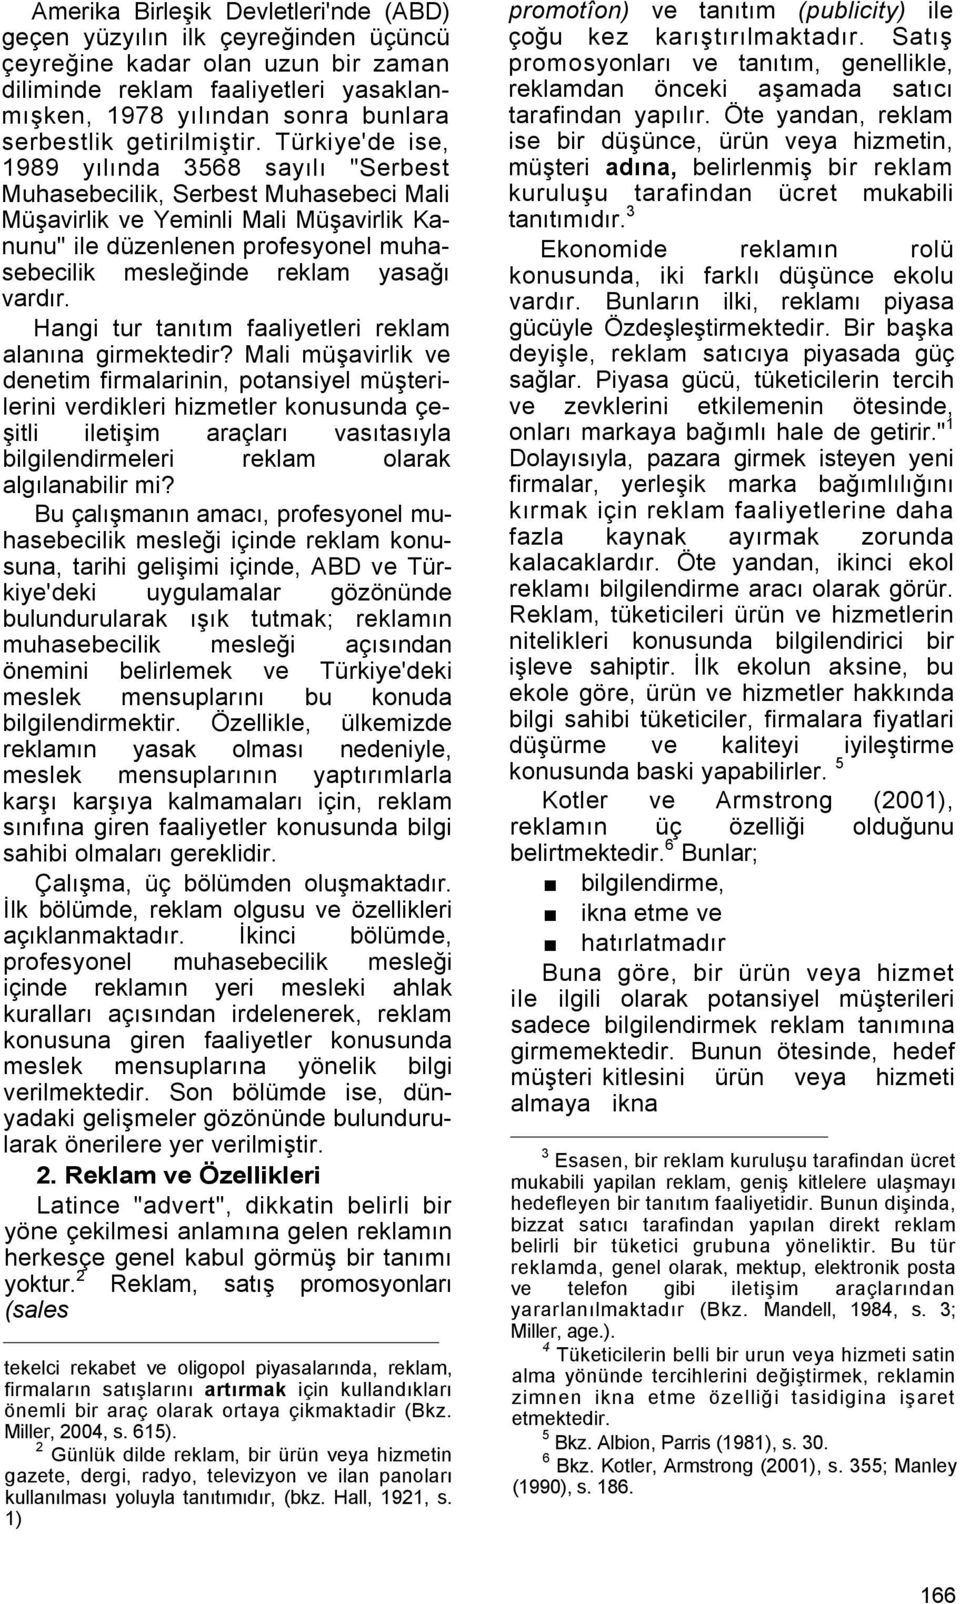 Türkiye'de ise, 1989 yılında 3568 sayılı "Serbest Muhasebecilik, Serbest Muhasebeci Mali Müşavirlik ve Yeminli Mali Müşavirlik Kanunu" ile düzenlenen profesyonel muhasebecilik mesleğinde reklam